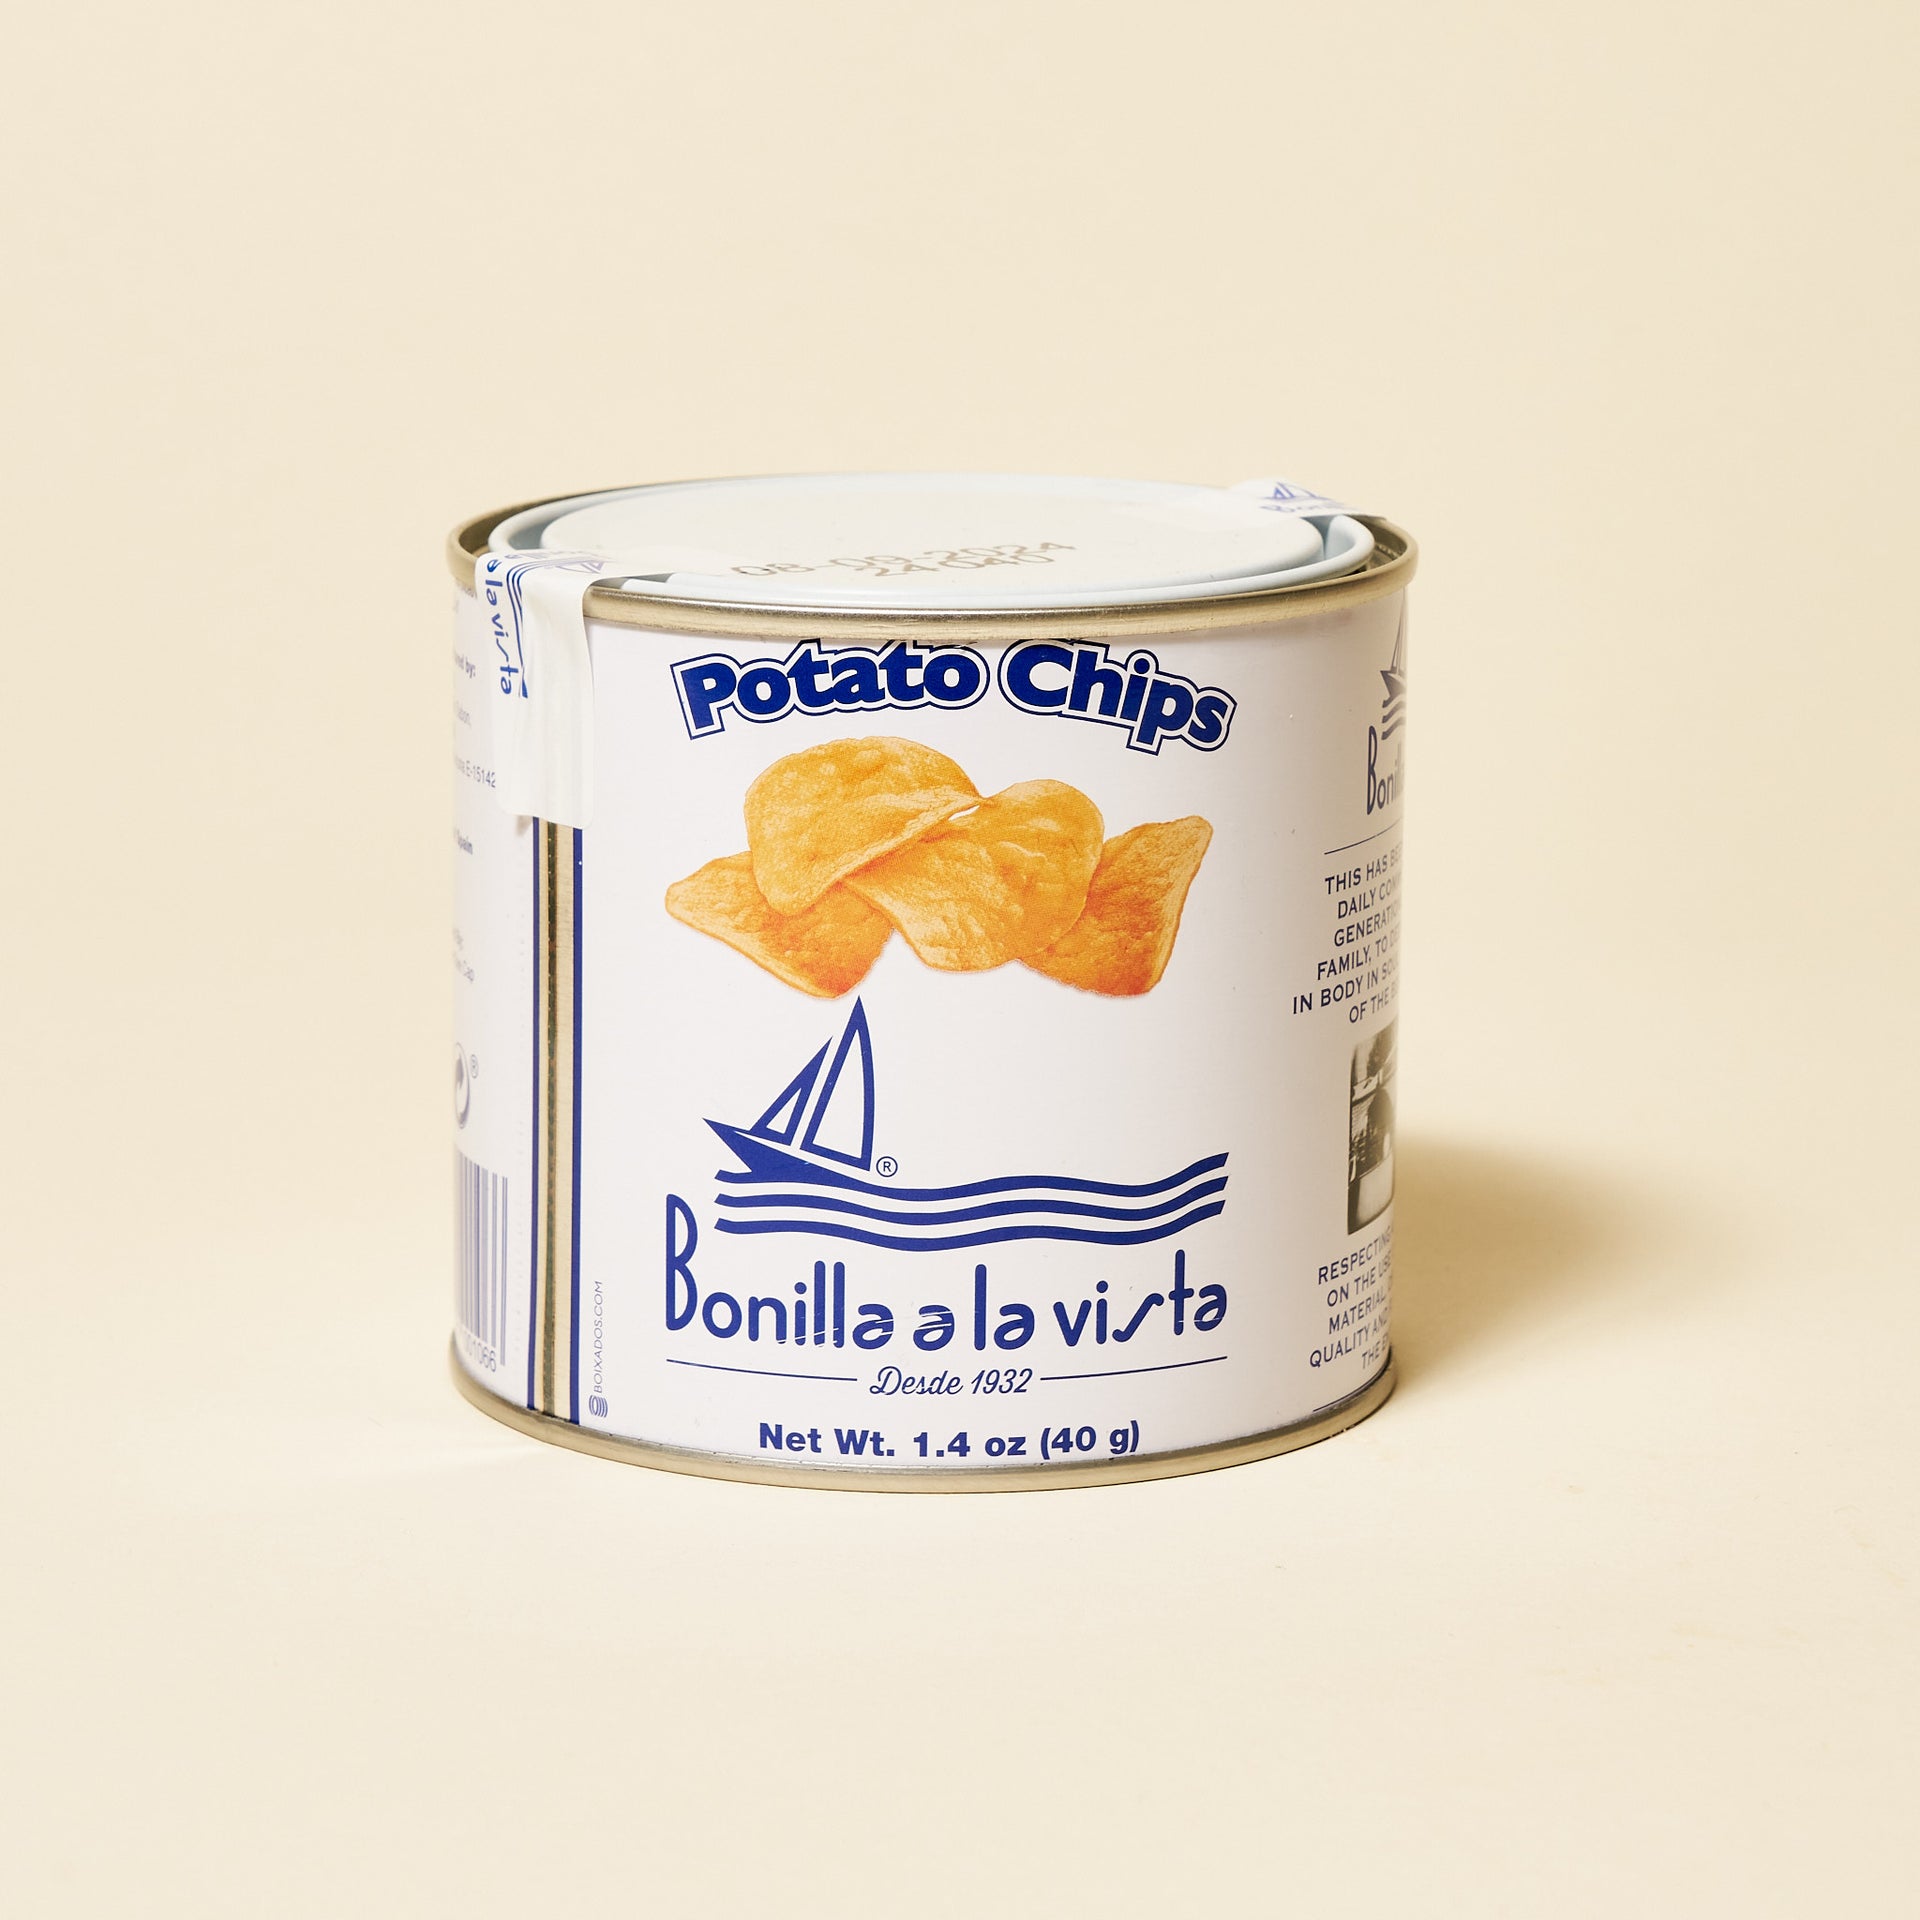 Bonilla a la Vista Potato Chips